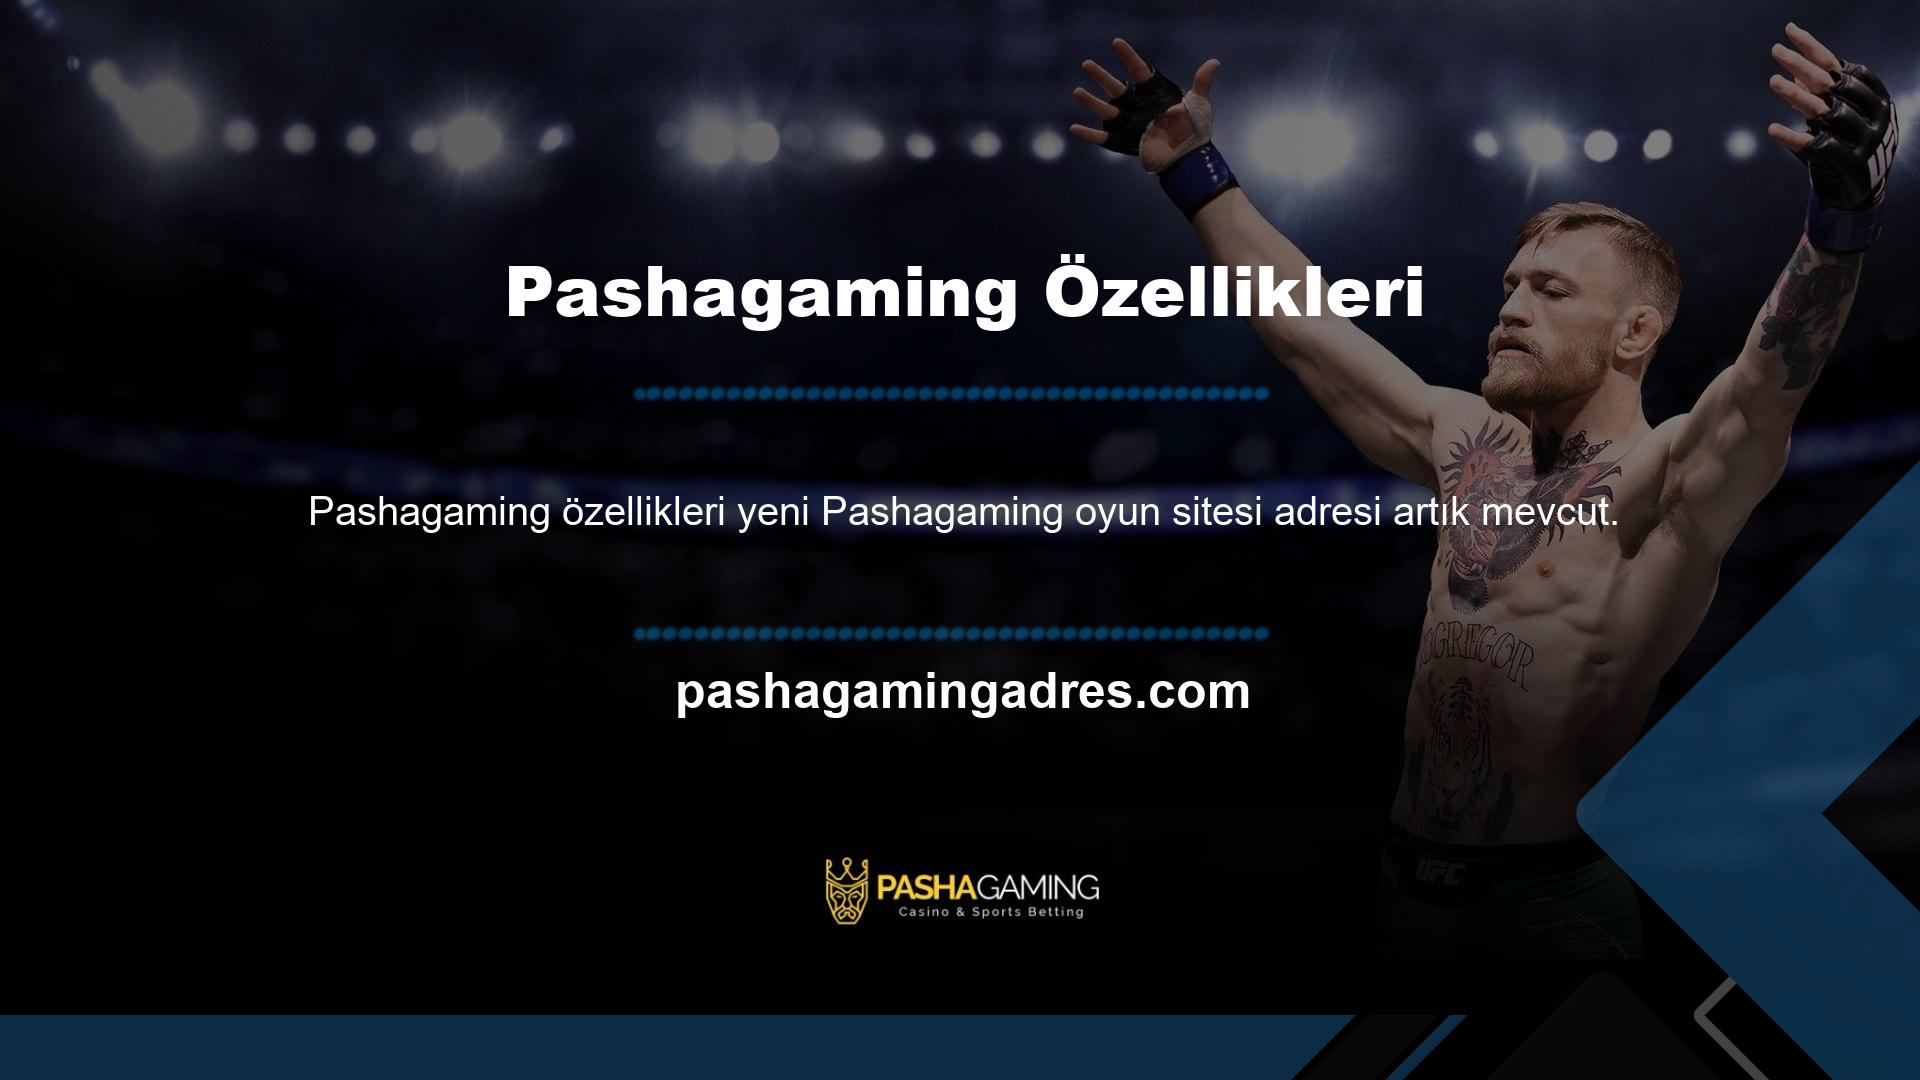 Pashagaming Gamingin ülkemizde faaliyet göstermesine yasal olarak izin verilmiştir